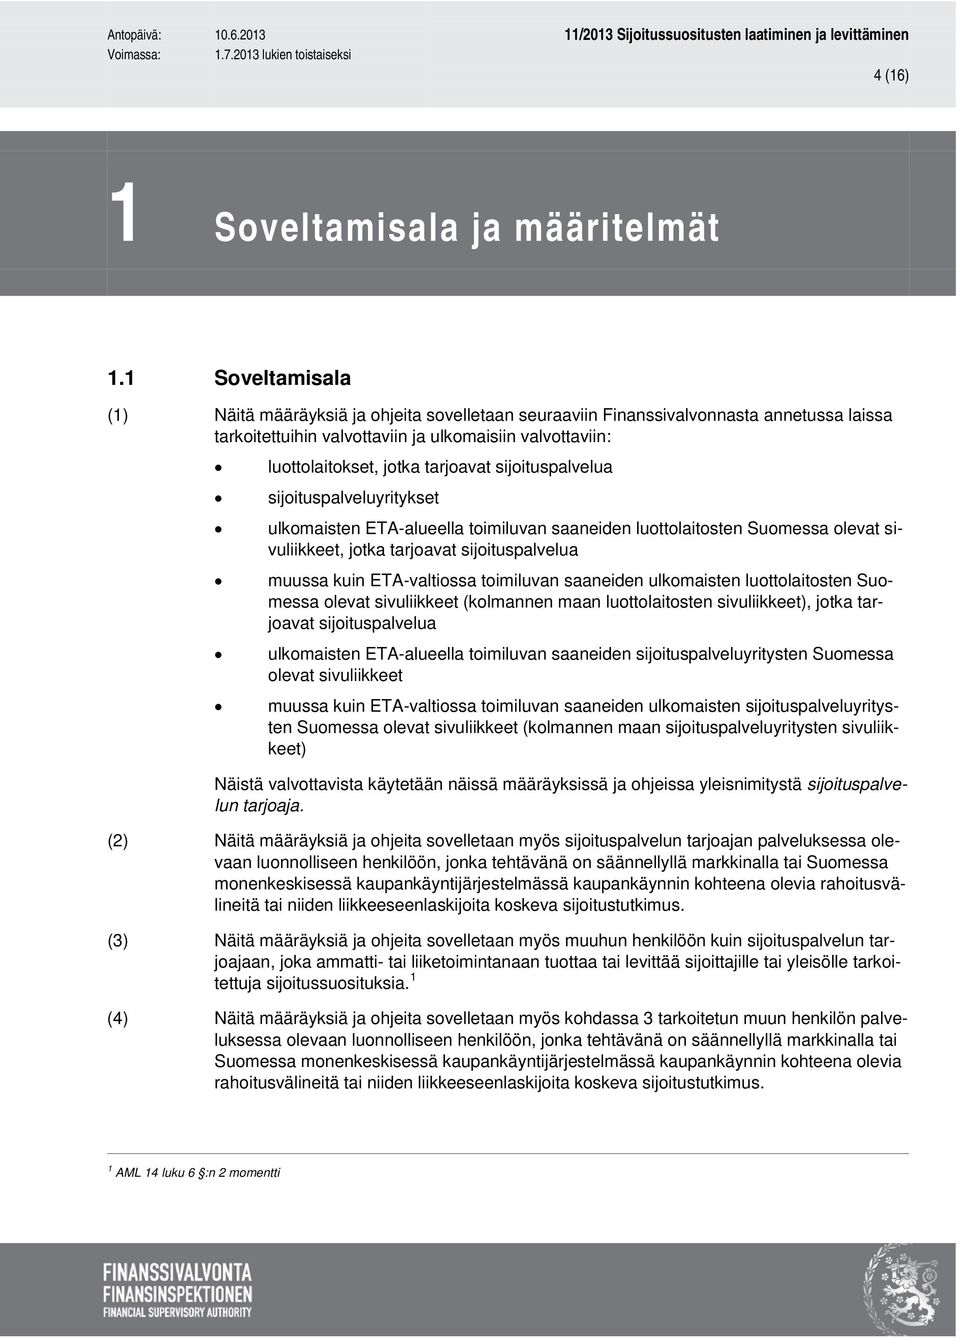 sijoituspalvelua sijoituspalveluyritykset ulkomaisten ETA-alueella toimiluvan saaneiden luottolaitosten Suomessa olevat sivuliikkeet, jotka tarjoavat sijoituspalvelua muussa kuin ETA-valtiossa